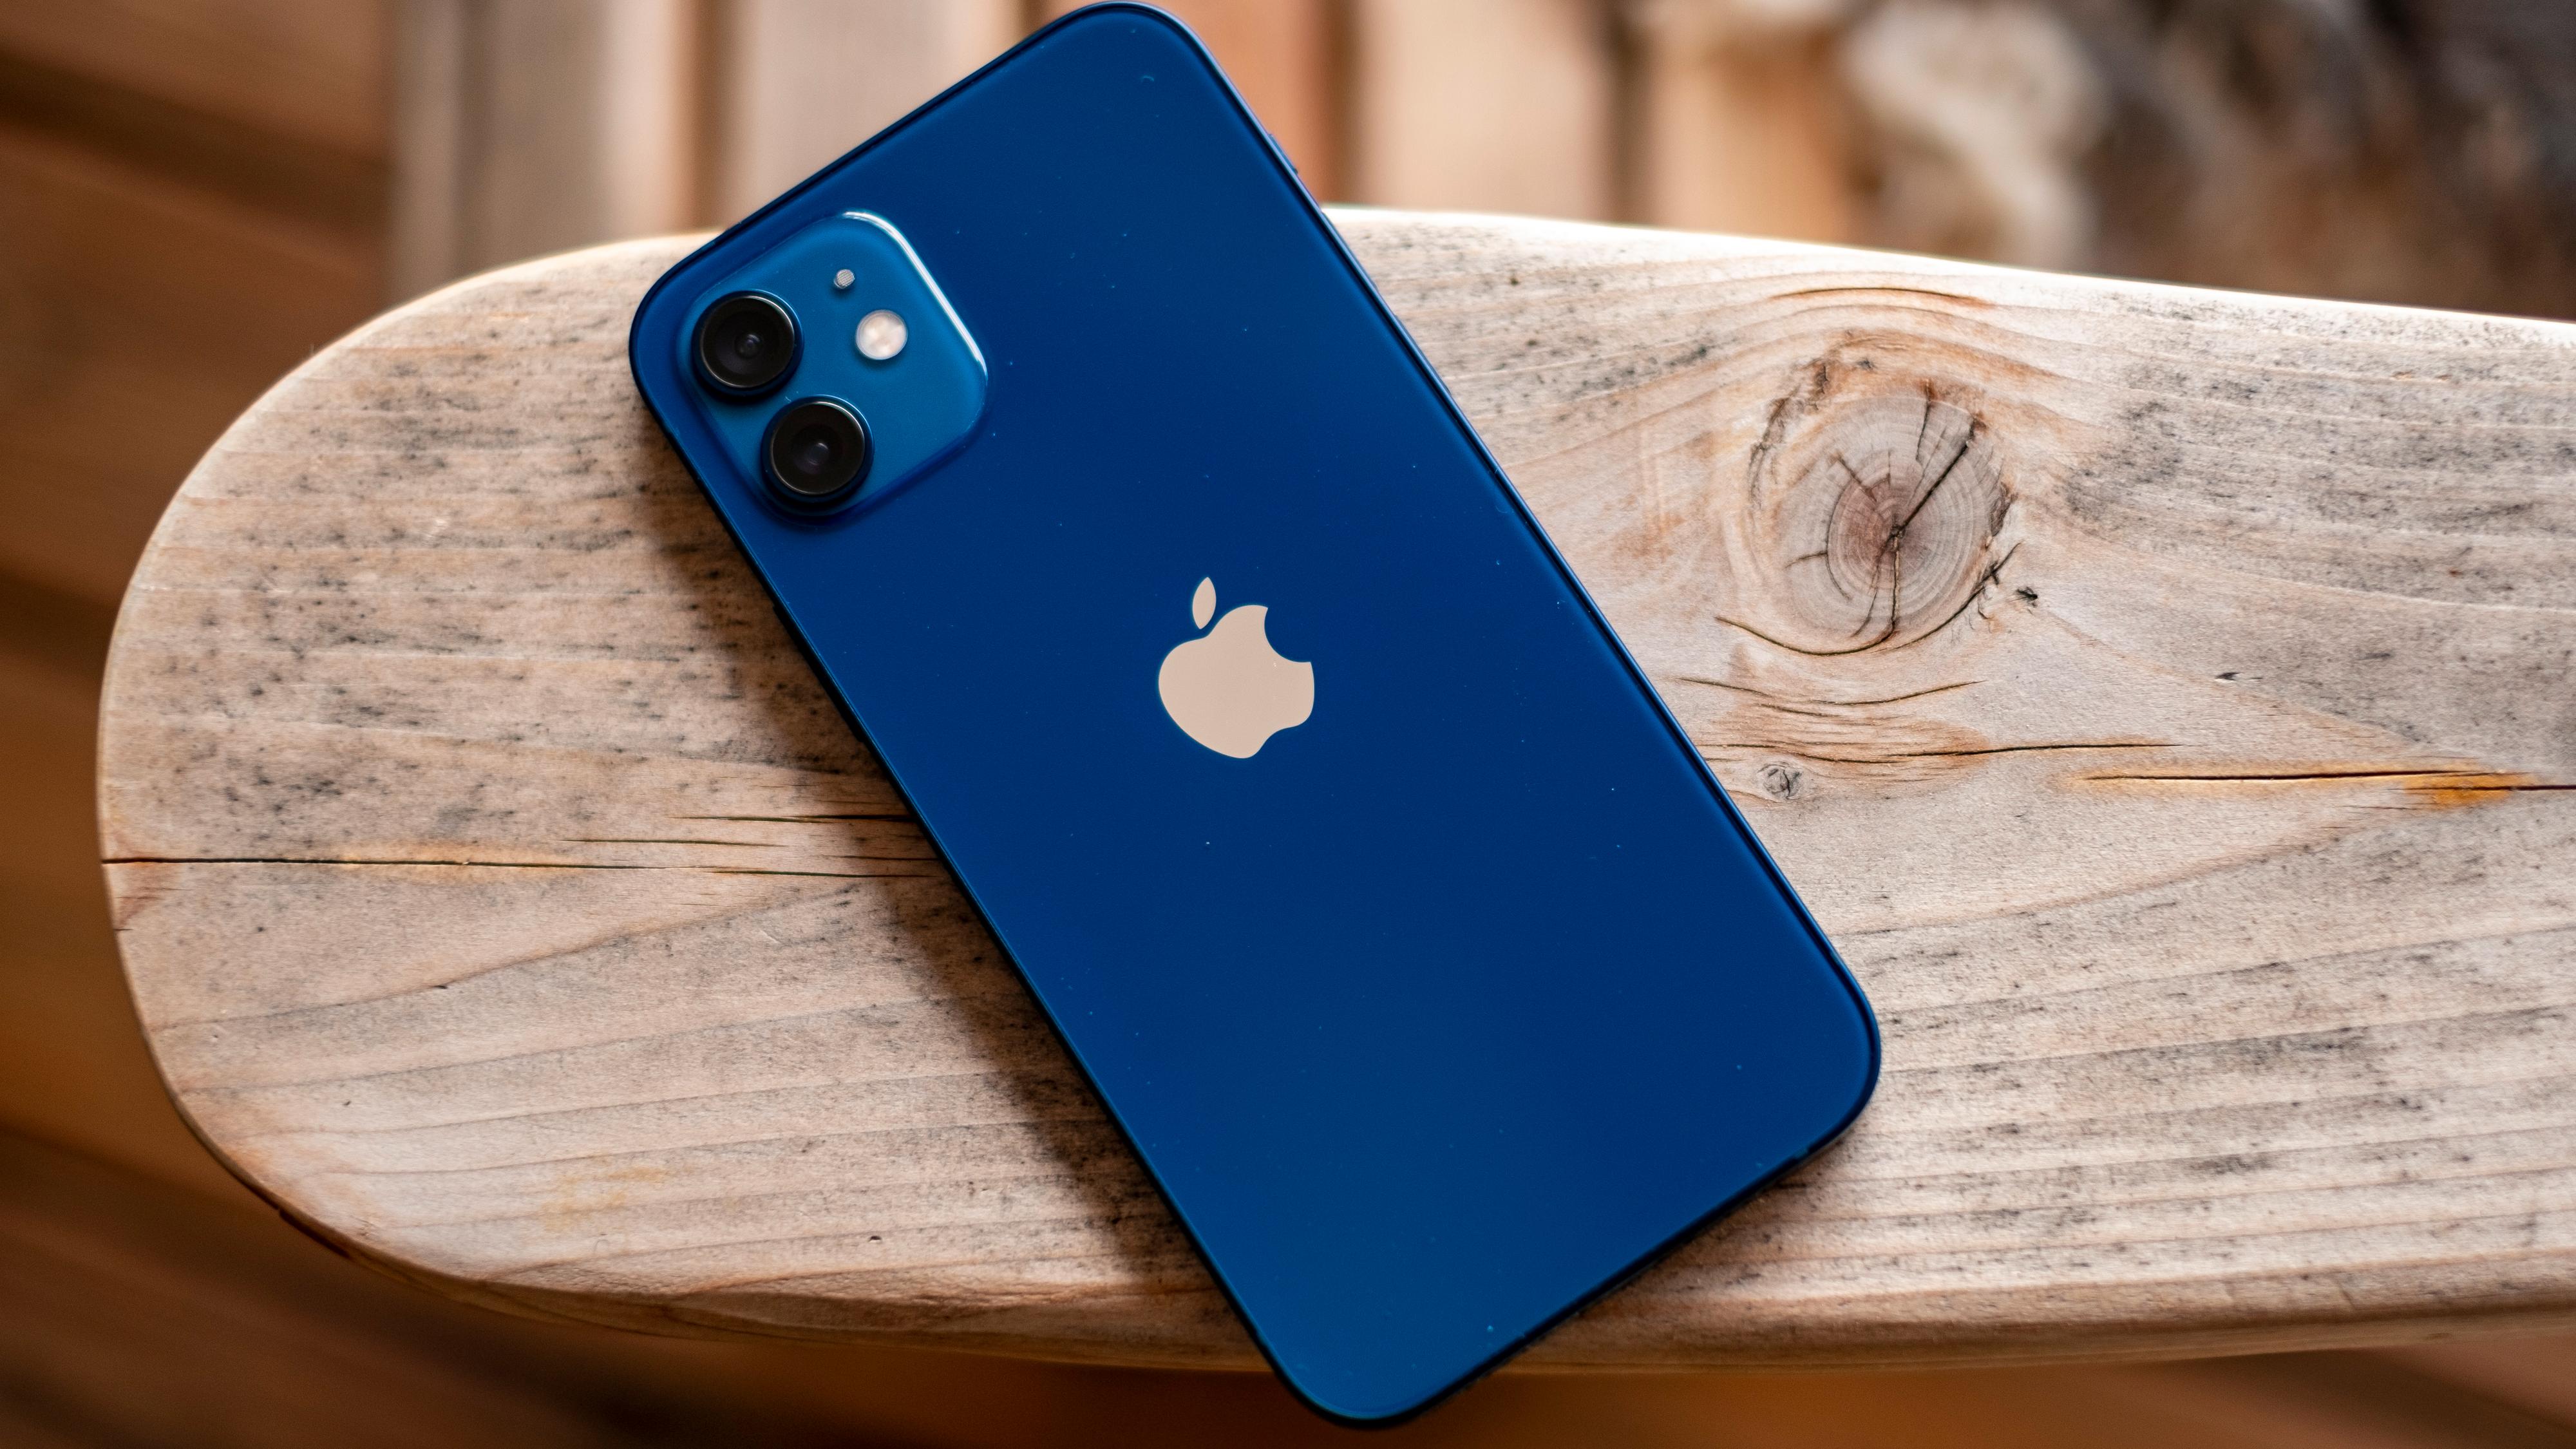 Blått er hott, ifølge Apple. iPhone 12 kommer i en knallvariant av fargen, mens iPhone 12 Pro kommer i en mer marineblå utførelse som grenser mot sjøgrønn.